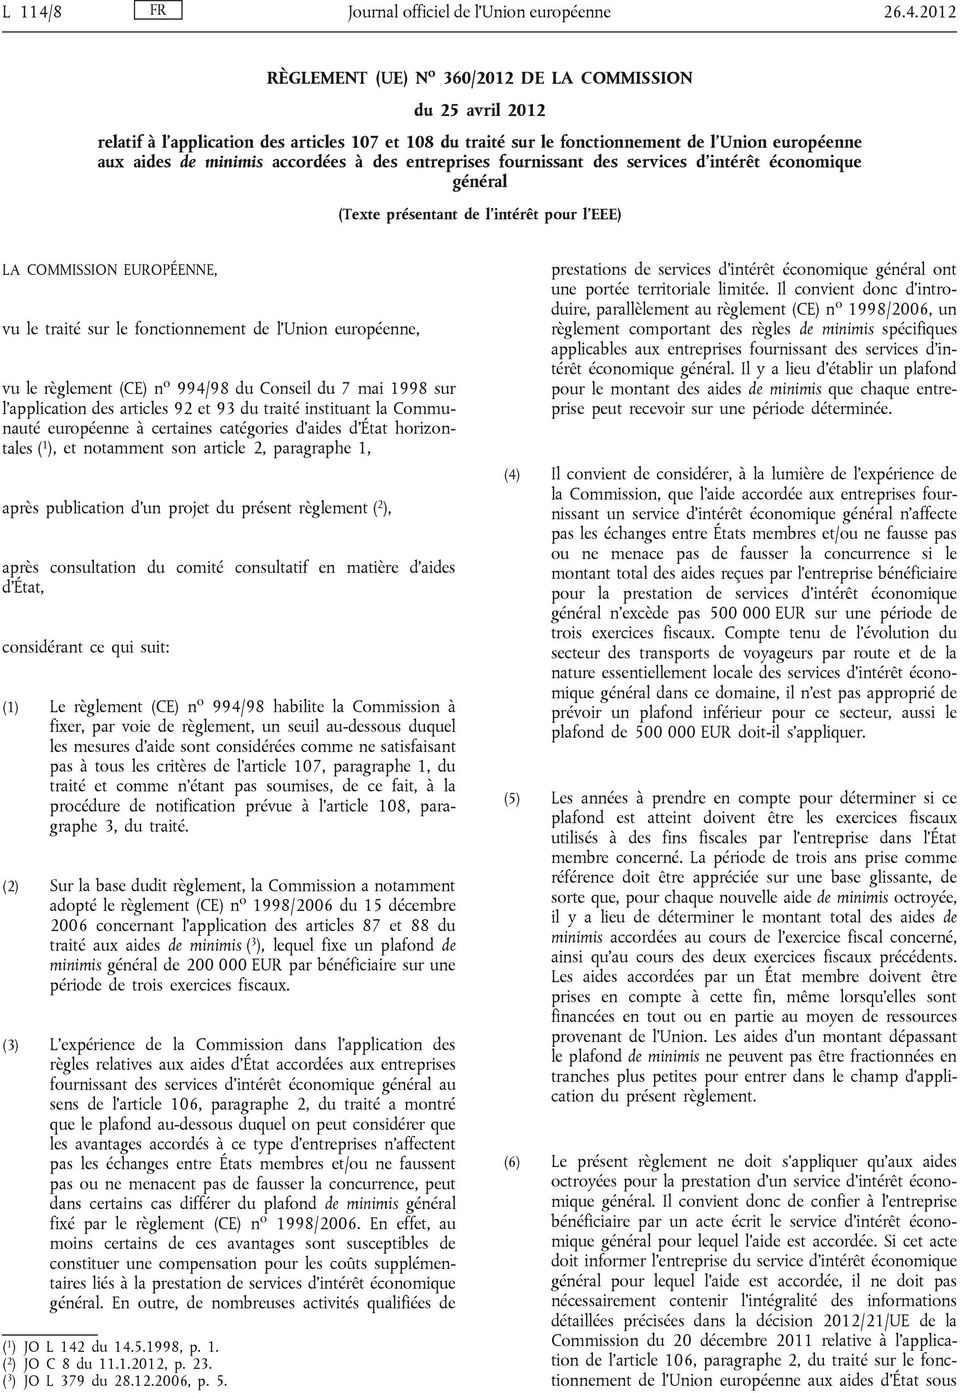 2012 RÈGLEMENT (UE) N o 360/2012 DE LA COMMISSION du 25 avril 2012 relatif à l application des articles 107 et 108 du traité sur le fonctionnement de l'union européenne aux aides de minimis accordées